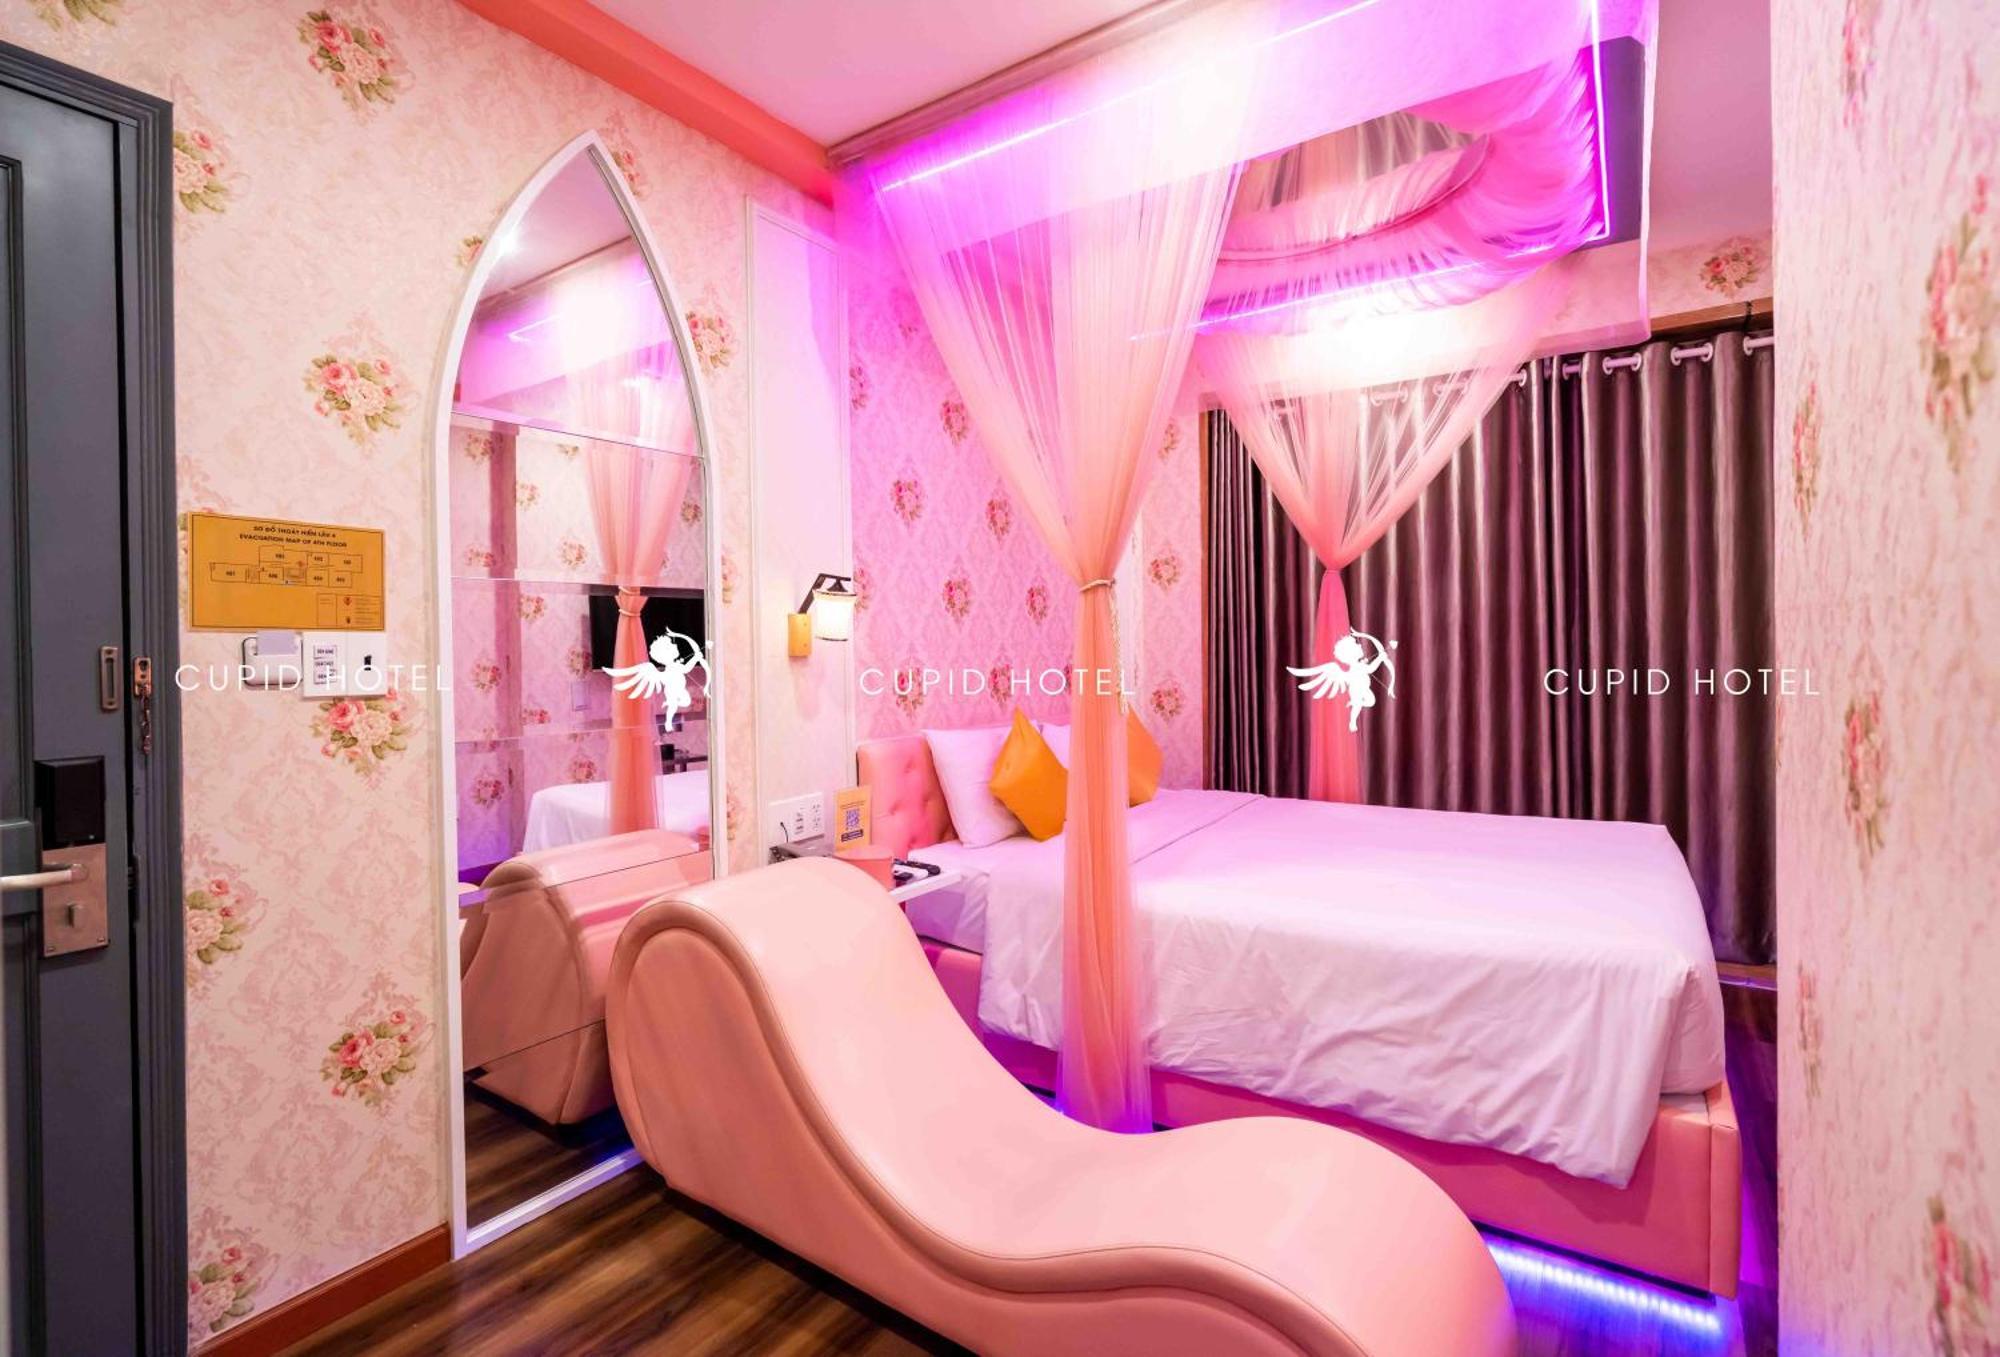 Cupid Hotel 2 Ho Chi Minh City Room photo